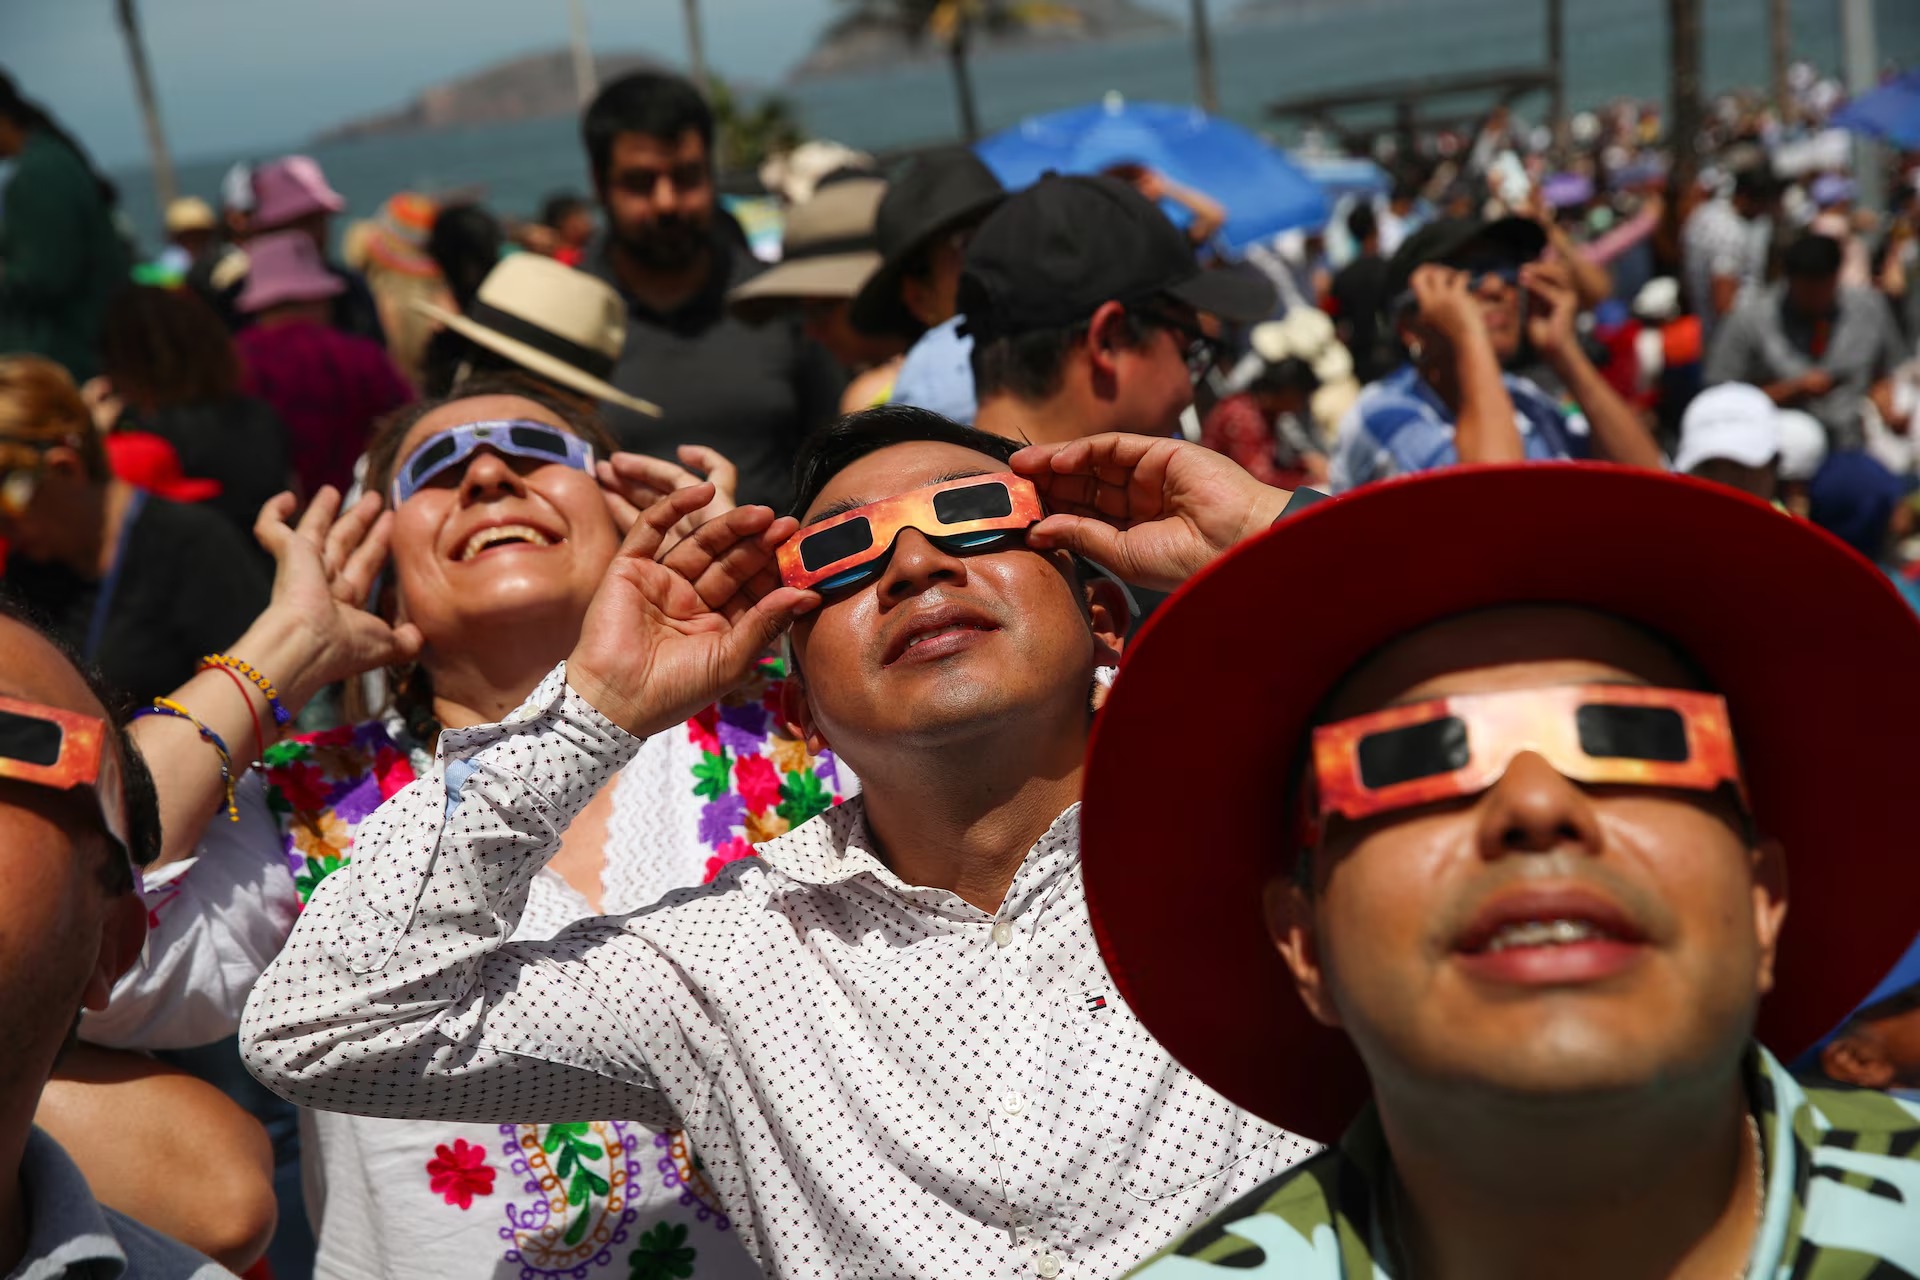 Người dân sử dụng kính bảo vệ đặc biệt để quan sát nhật thực toàn phần ở Mazatlan, Mexico. Khi chiêm ngưỡng nhật thực, người xem bắt buộc phải đeo kính để phòng tránh các tia cực tím gây ra những vấn đề nghiêm trọng với mắt, thậm chí gây mù loà. (Ảnh: Reuters)